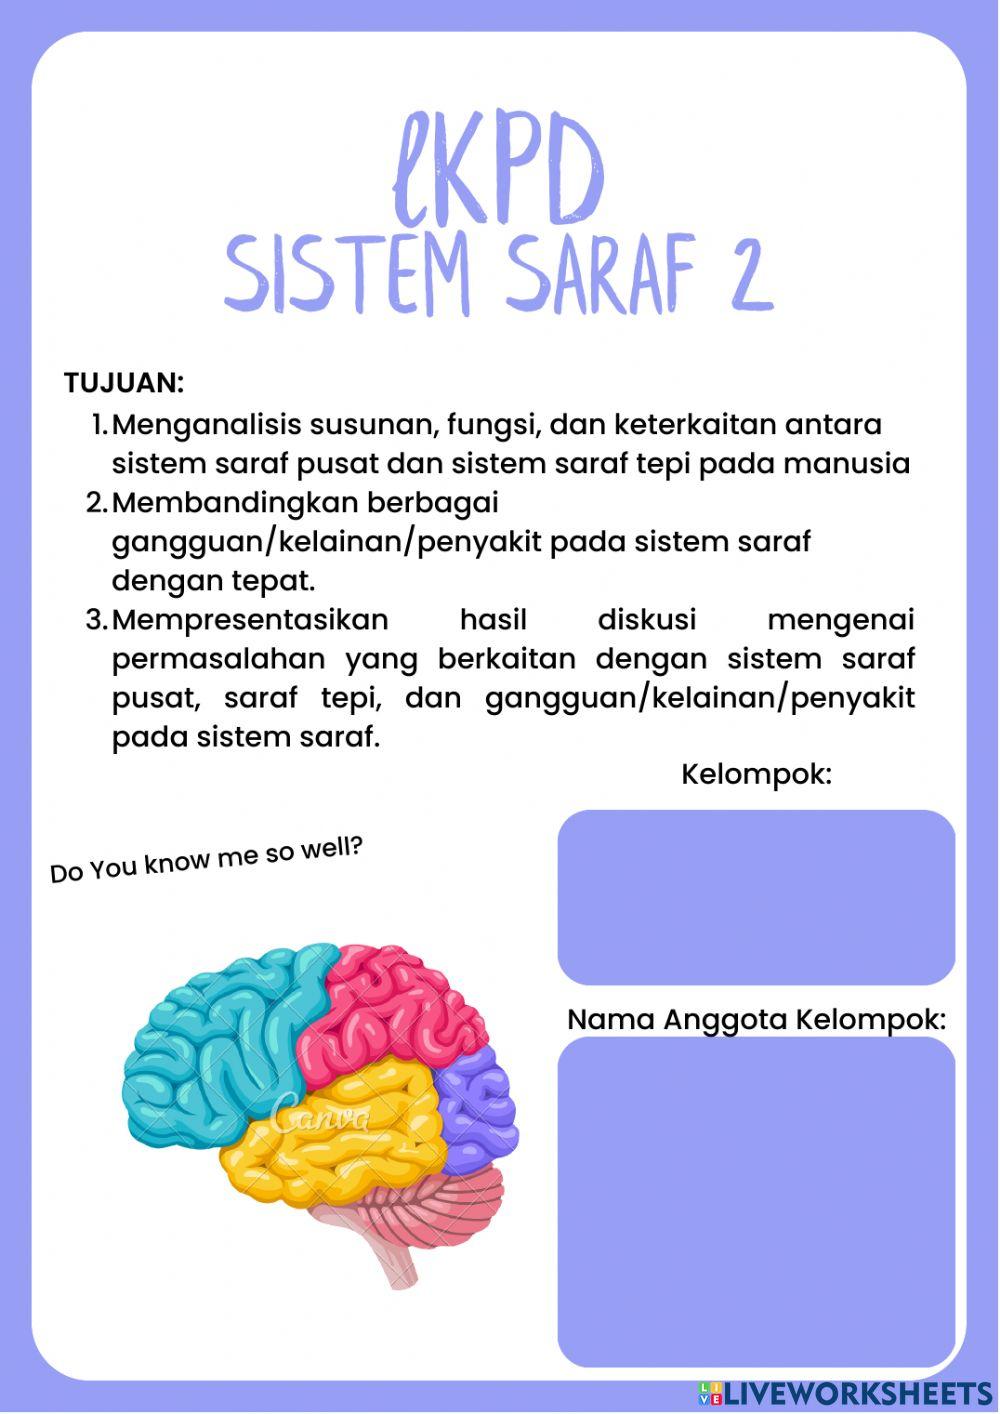 LKPD Sistem saraf 2